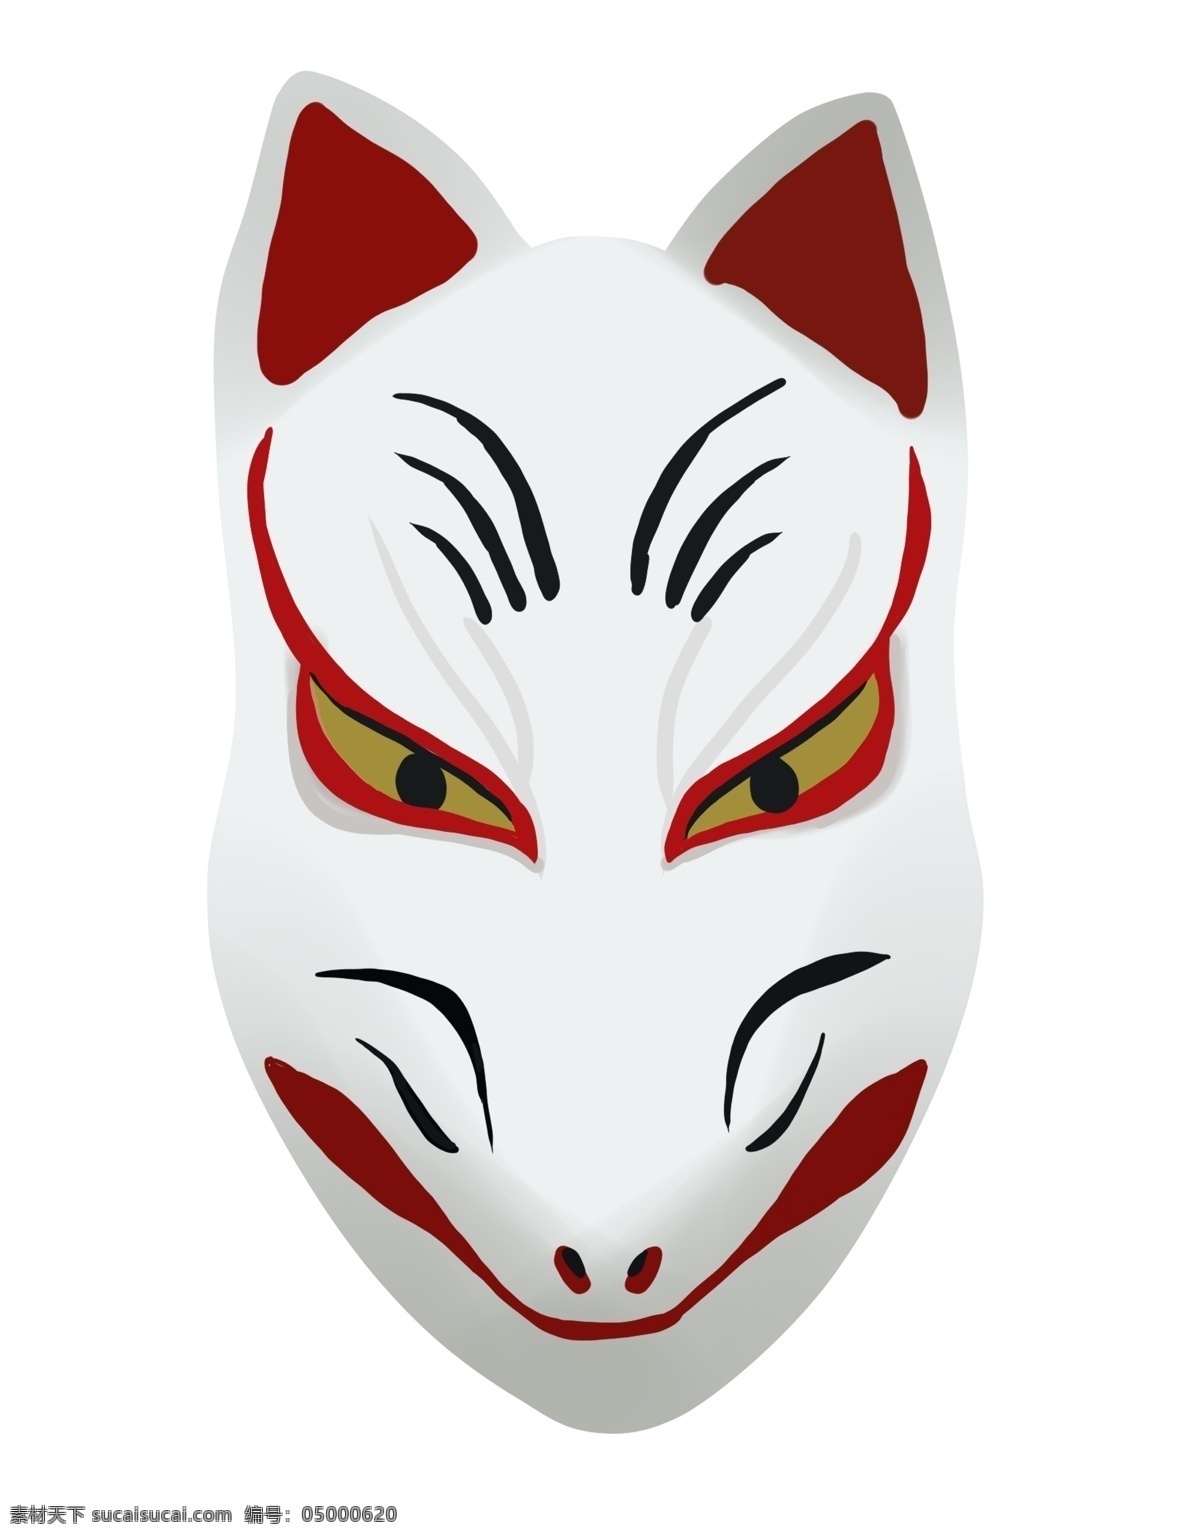 日本 狐狸 面具 插画 狐狸的面具 卡通插画 日本插画 日本特产 日本风情 日本物品 动物的面具